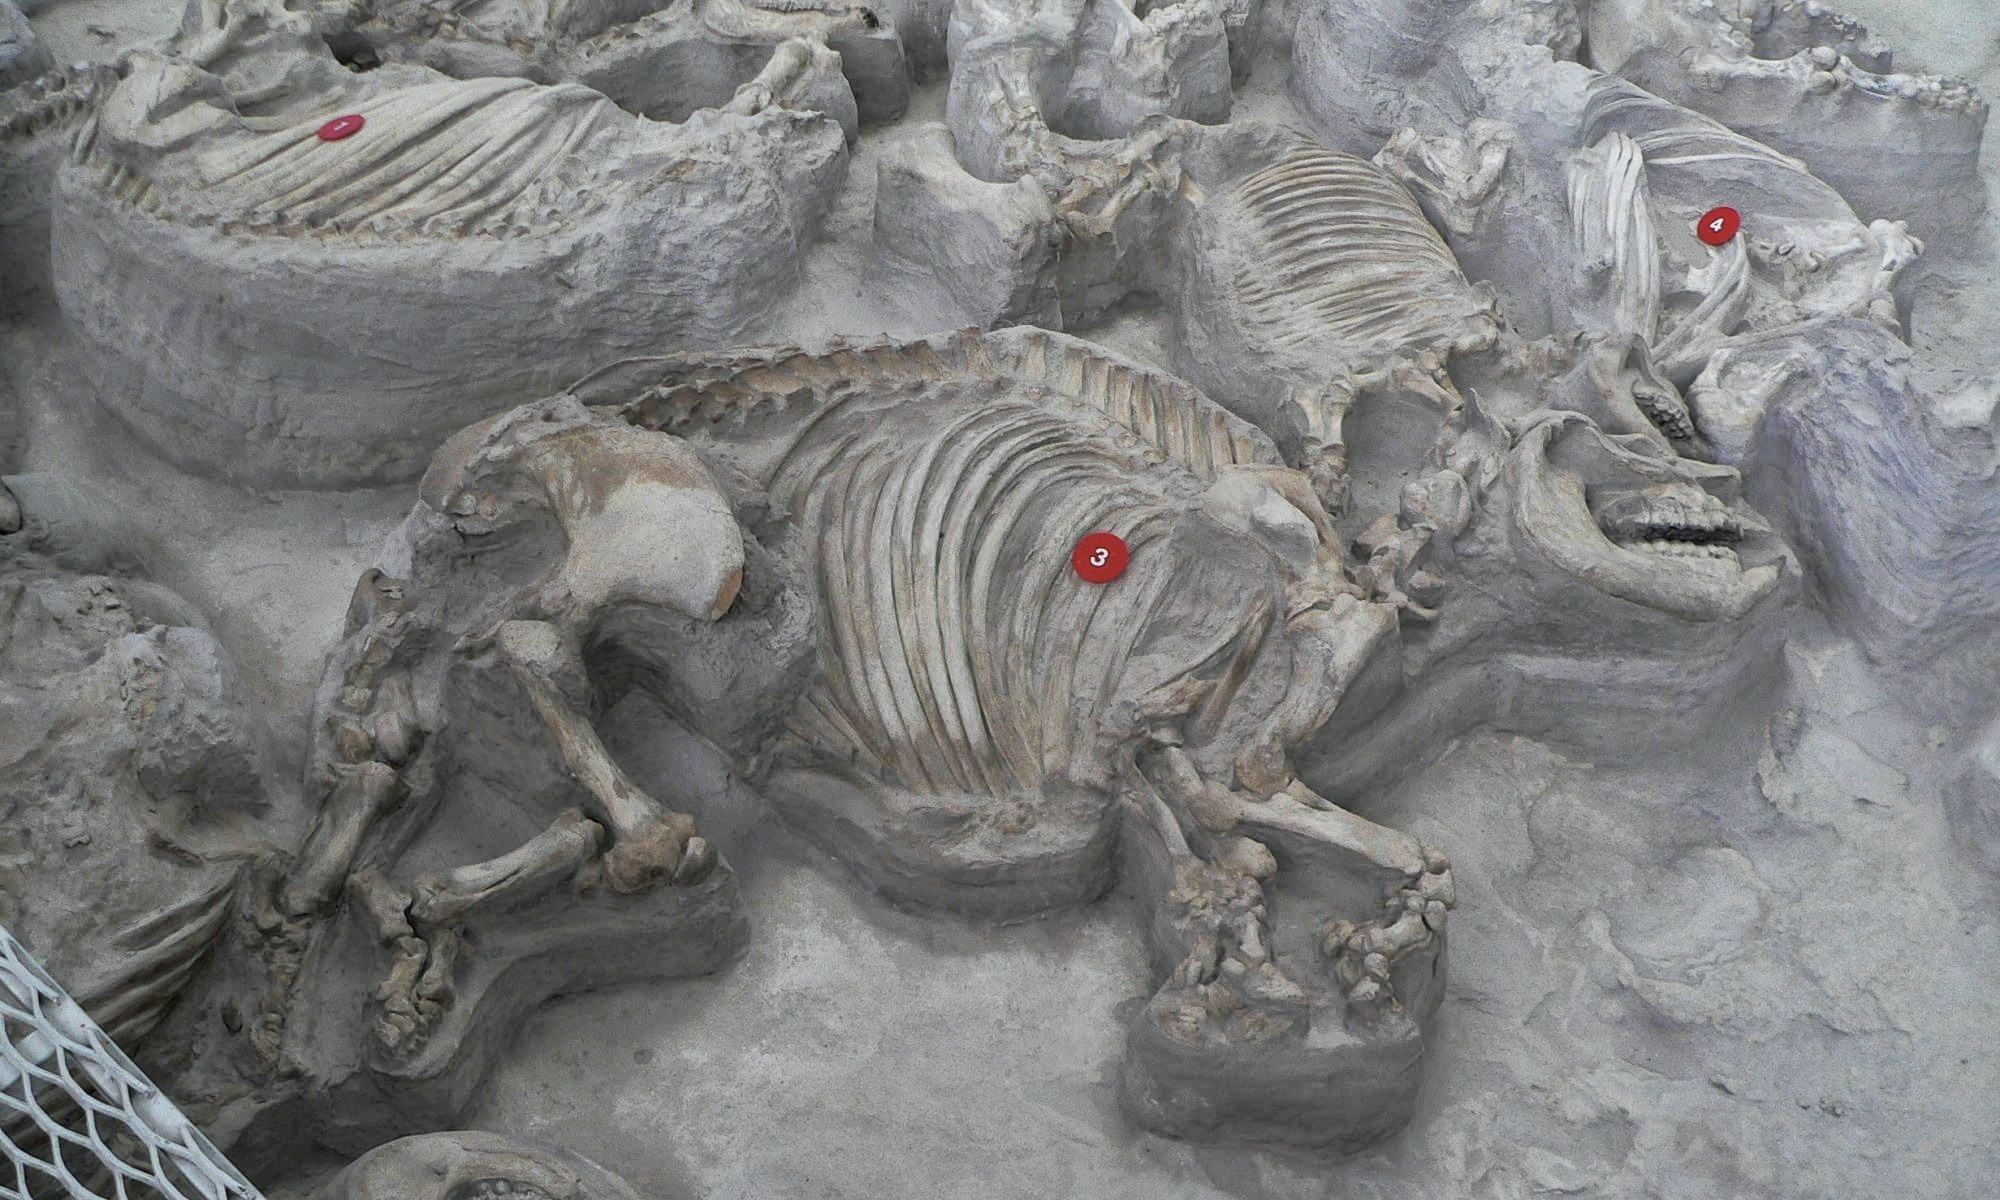 Nebraska 1 iidsest tuhapeenrast leiti sadu hästi säilinud eelajaloolisi loomi